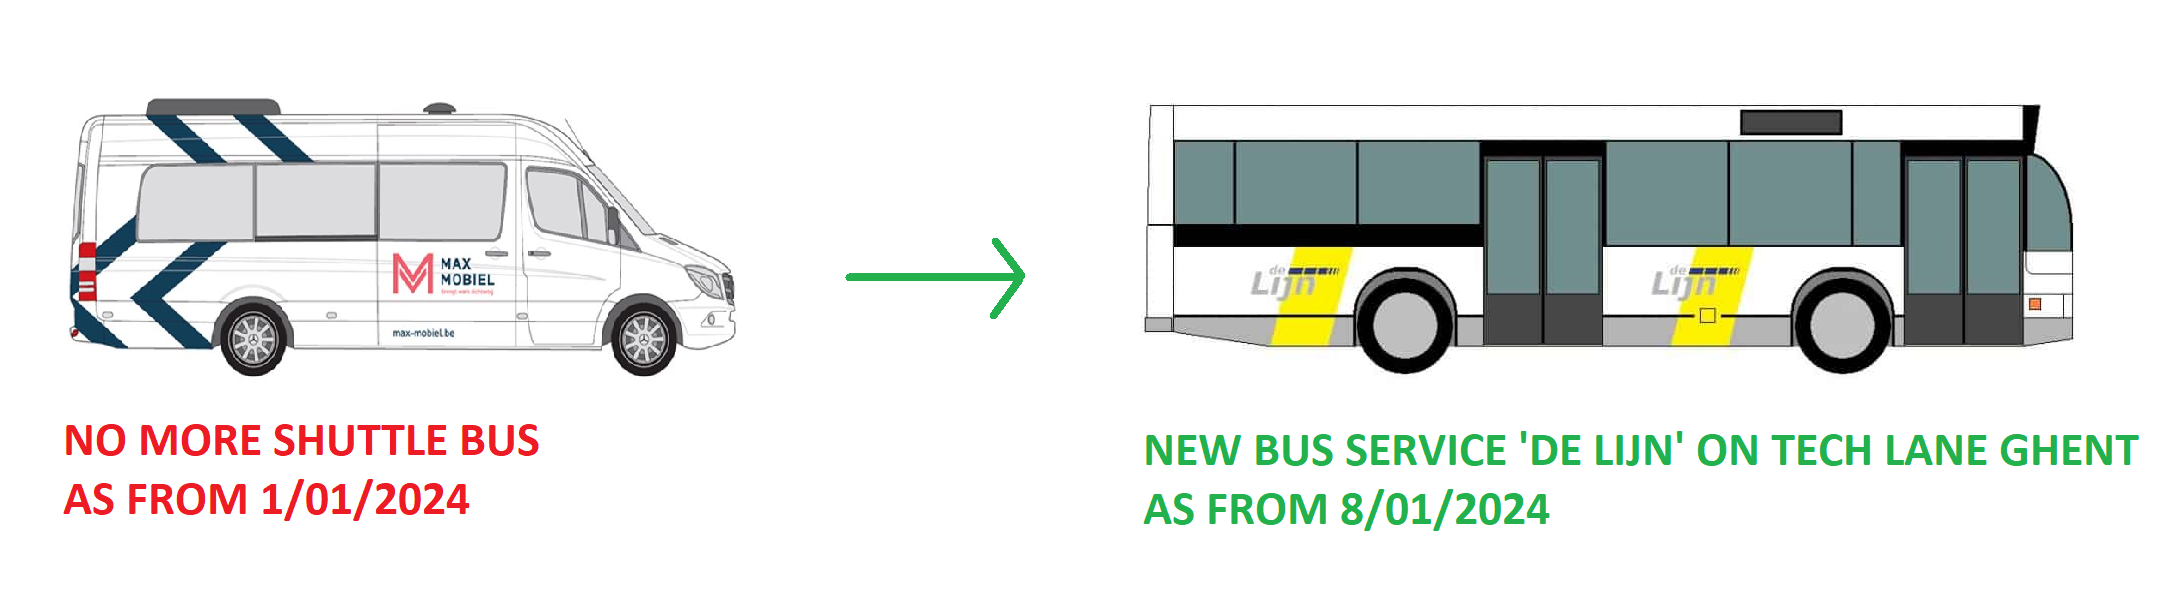 New bus service De Lijn